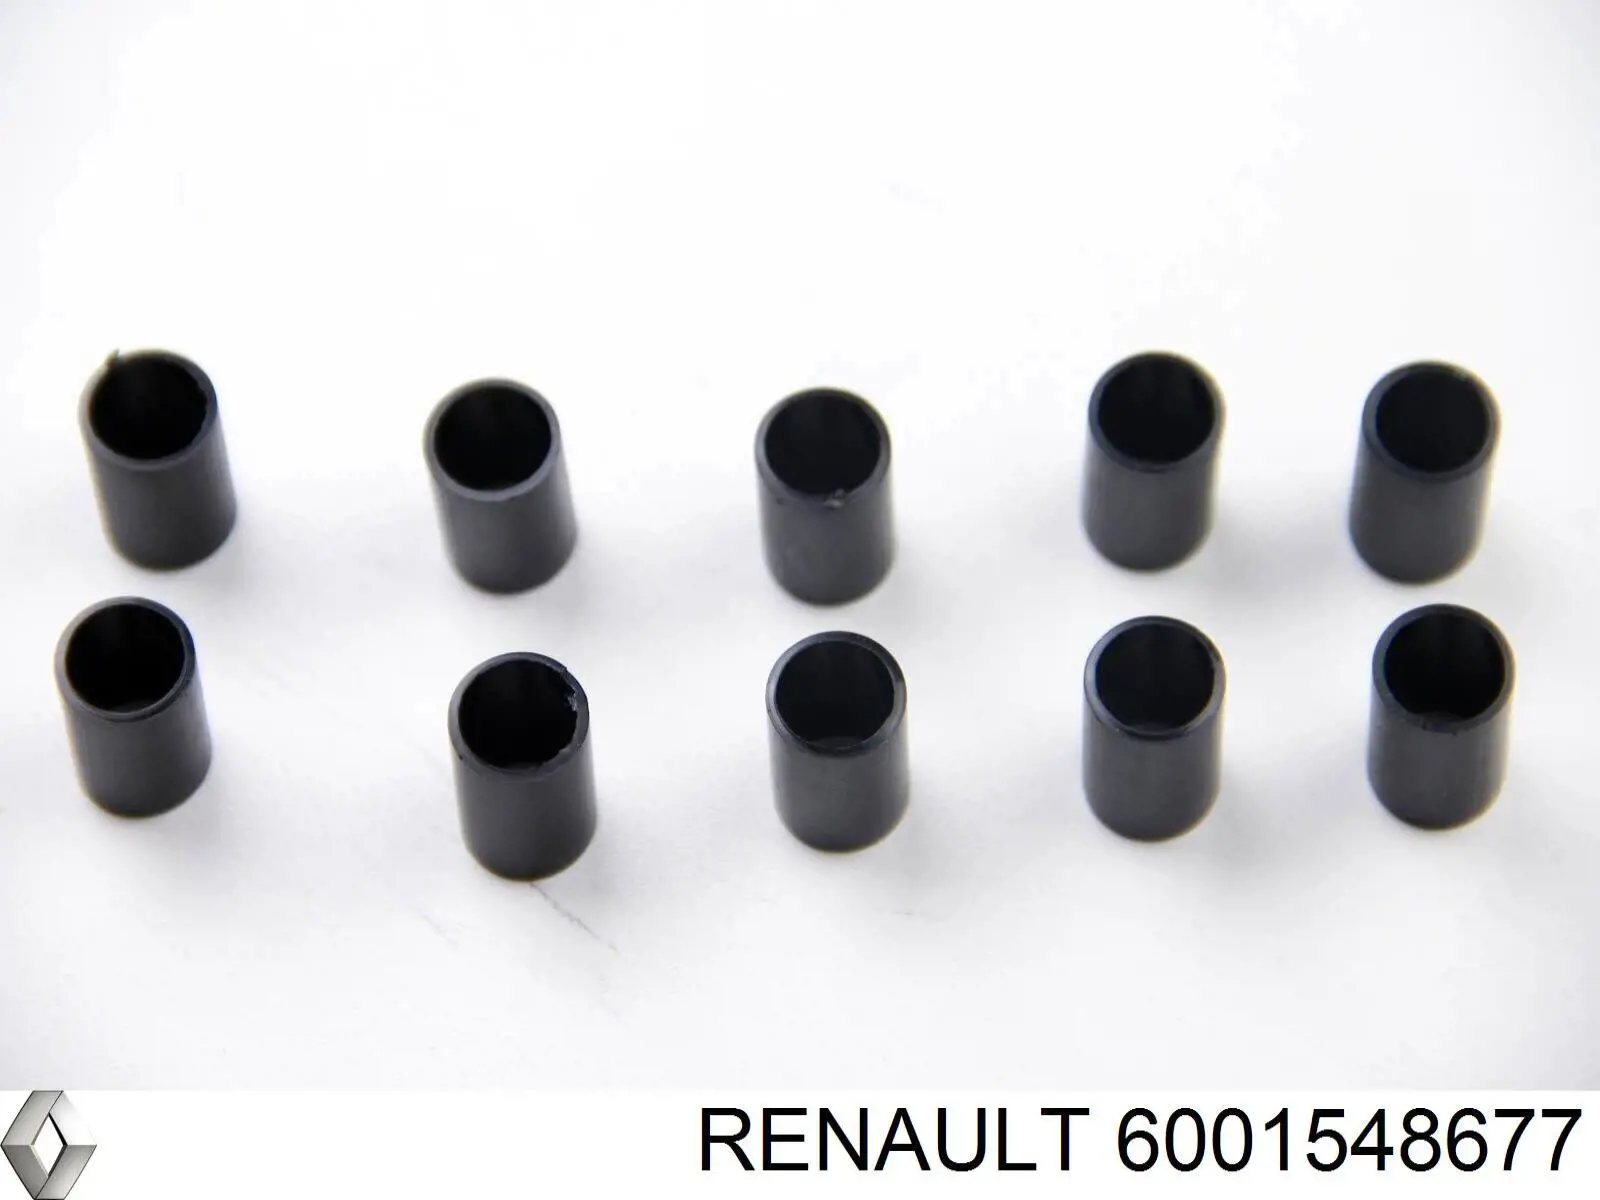 Tope de sujeción, Asegurador puerta Renault (RVI) 6001548677